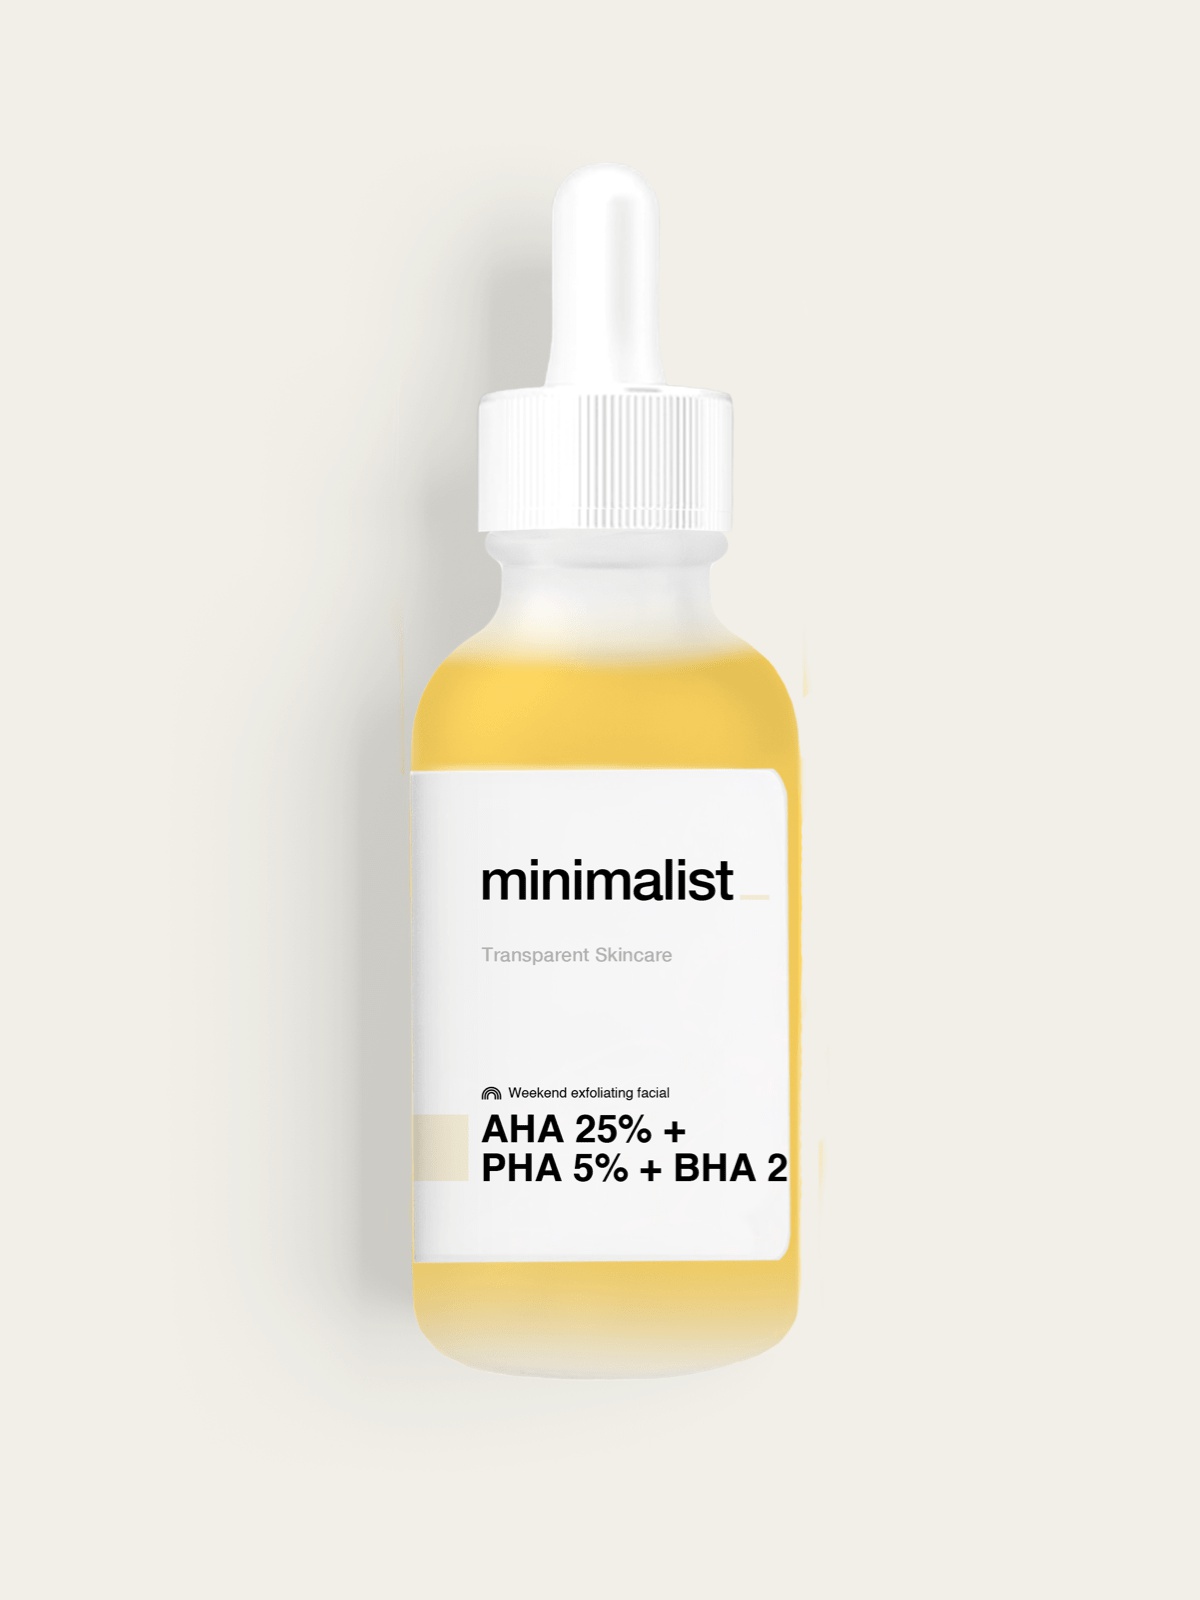 minimalist Aha 25% + Pha 5% + Bha 2%